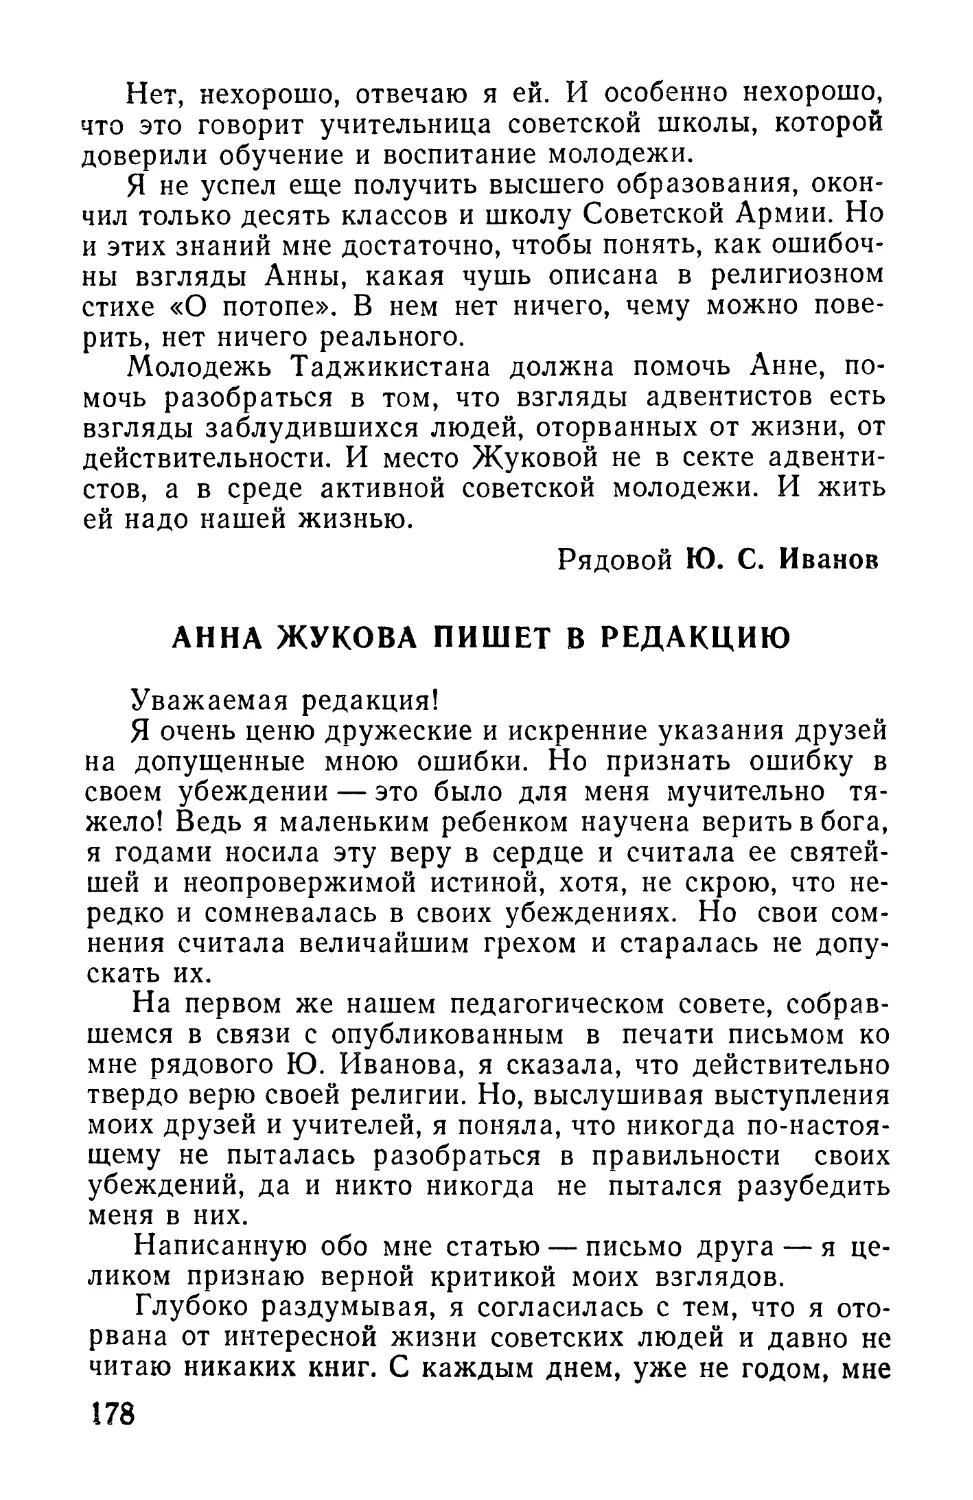 Жукова А. В. Анна Жукова пишет в редакцию